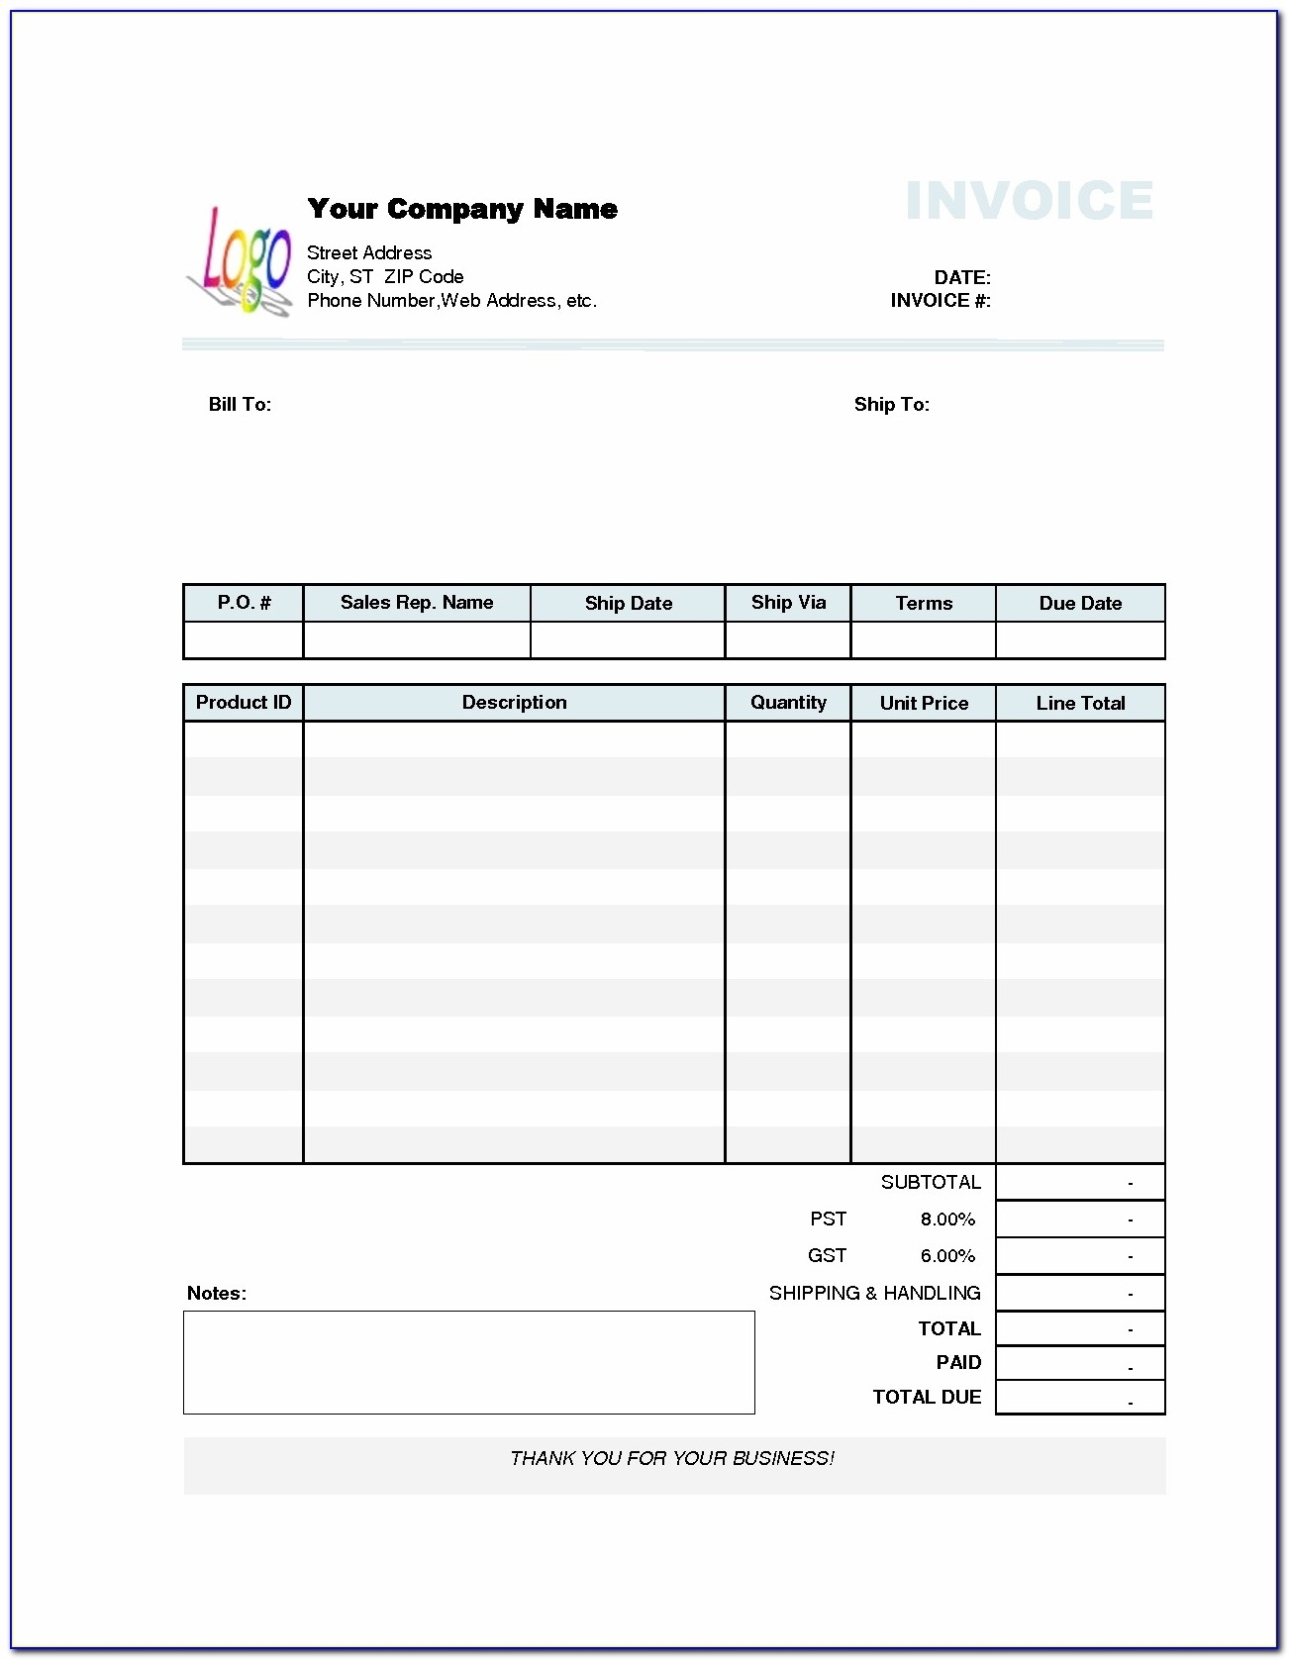 Sample Quickbooks Invoice Template Ideas Excel Simple Free Quickbooks Invoice Templates - Form for Quickbooks Invoice Template Excel